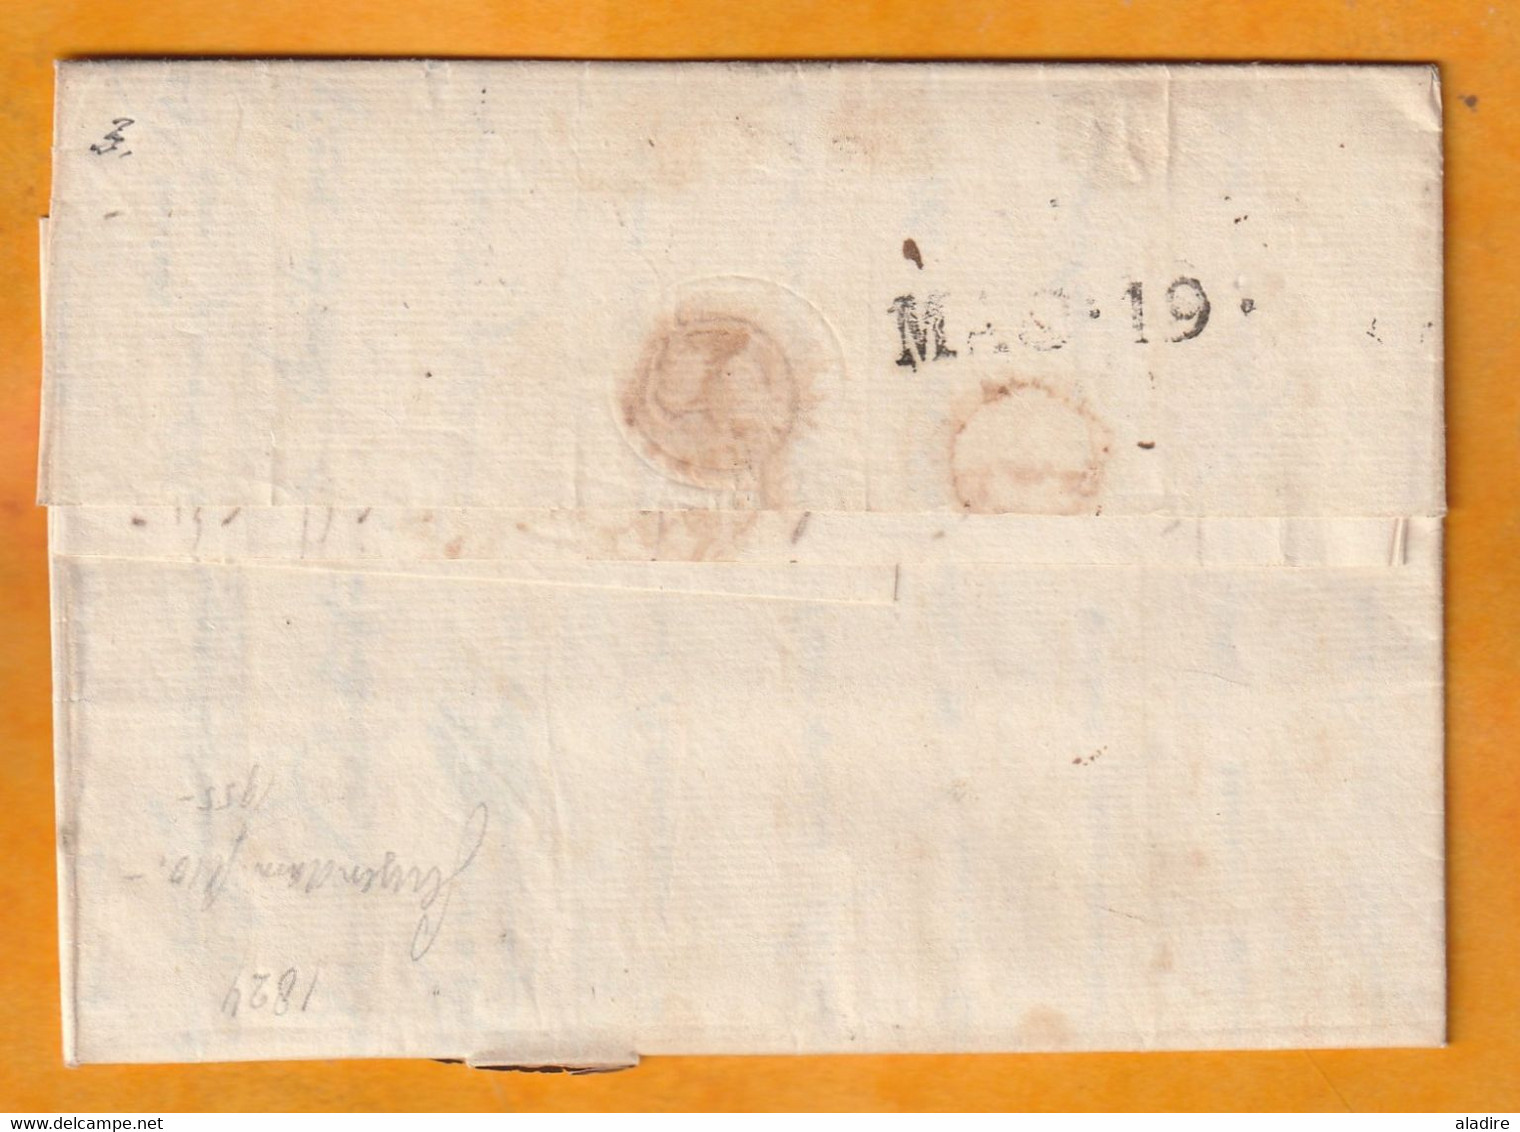 1824 - Marque Postale 32 LA REOLE sur lettre pliée avec corresp de 2 p vers NICE, Piémont Sardaigne - taxe 18